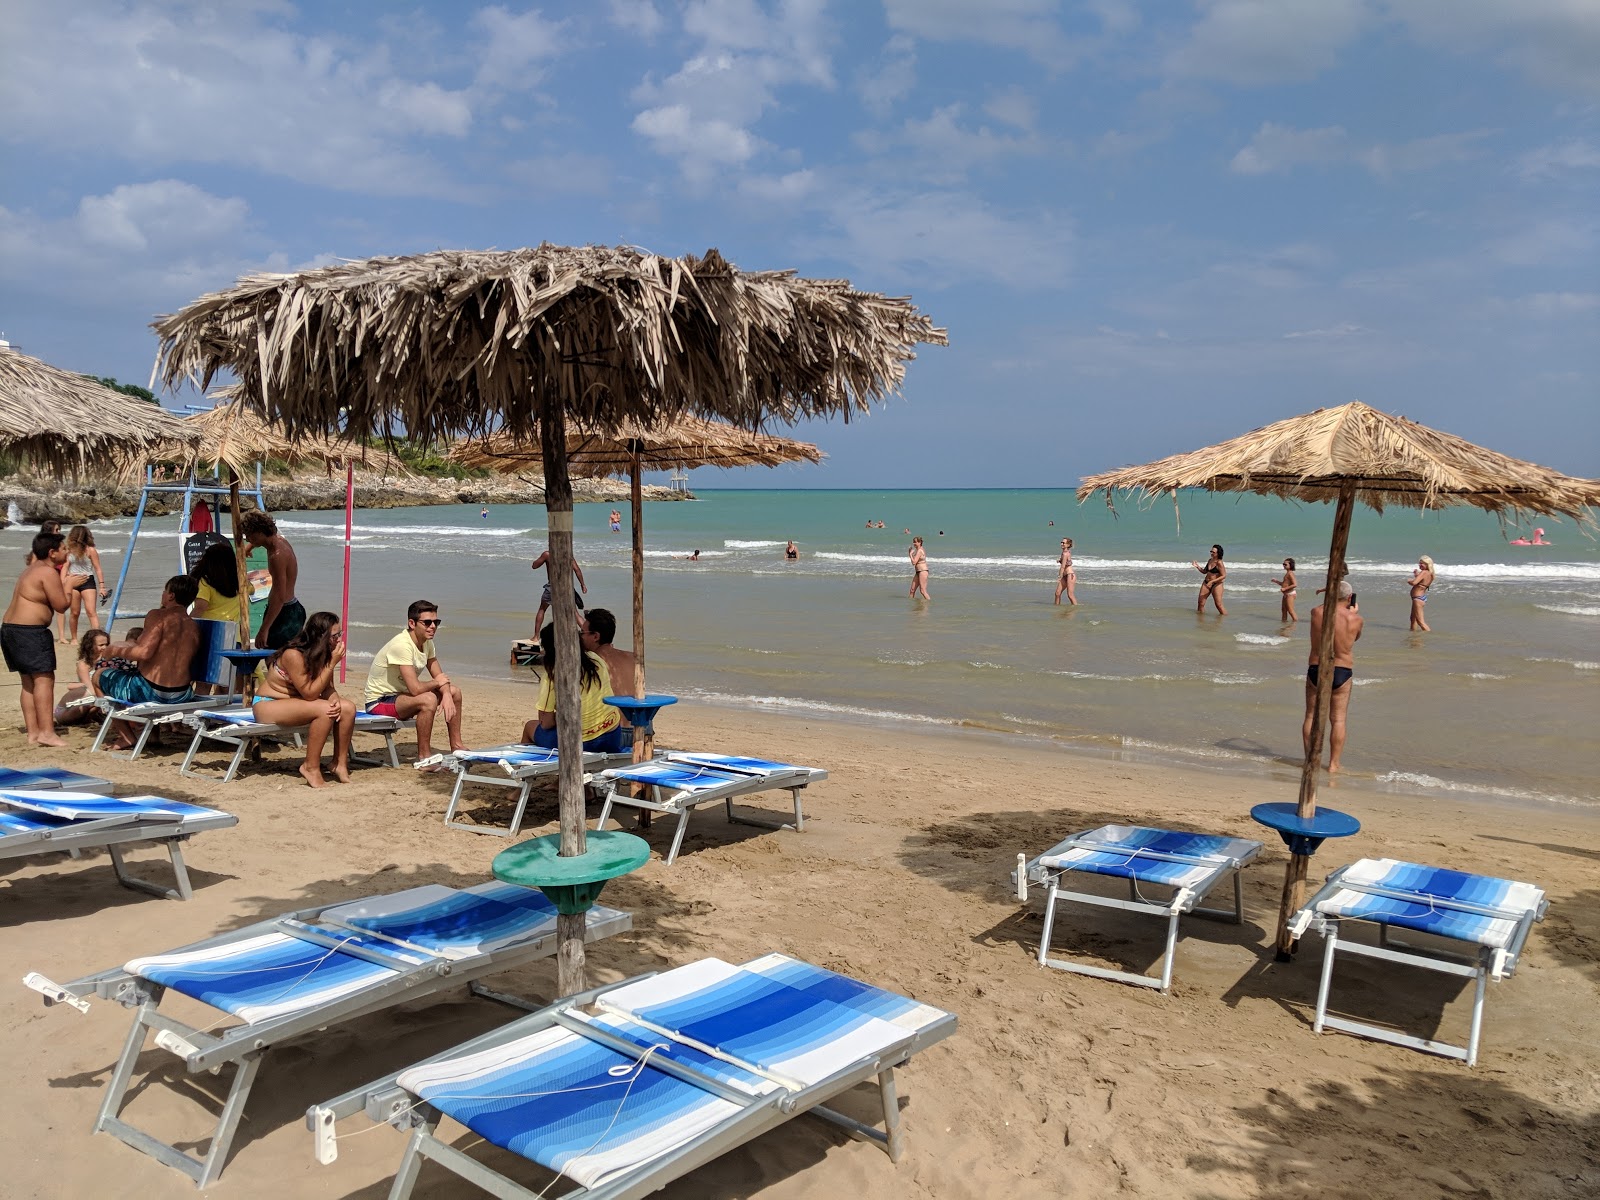 Spiaggia di San Nicola'in fotoğrafı plaj tatil beldesi alanı